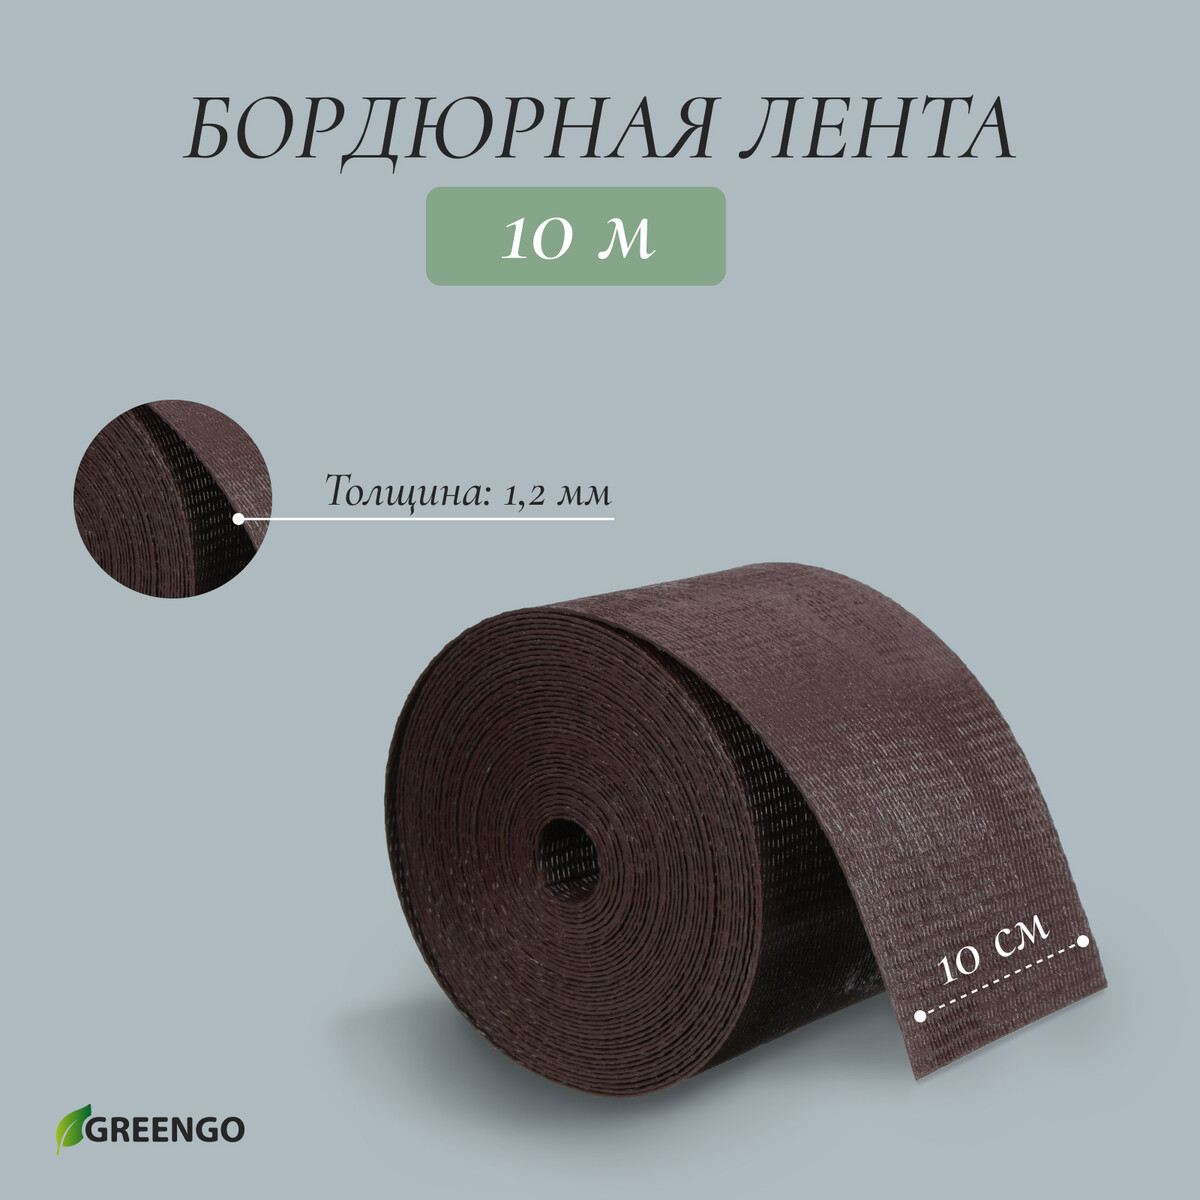 Лента бордюрная, 0.1 × 10 м, толщина 1.2 мм, пластиковая, коричневая, greengo лента бордюрная 0 15 × 9 м толщина 1 2 мм пластиковая фигурная коричневая